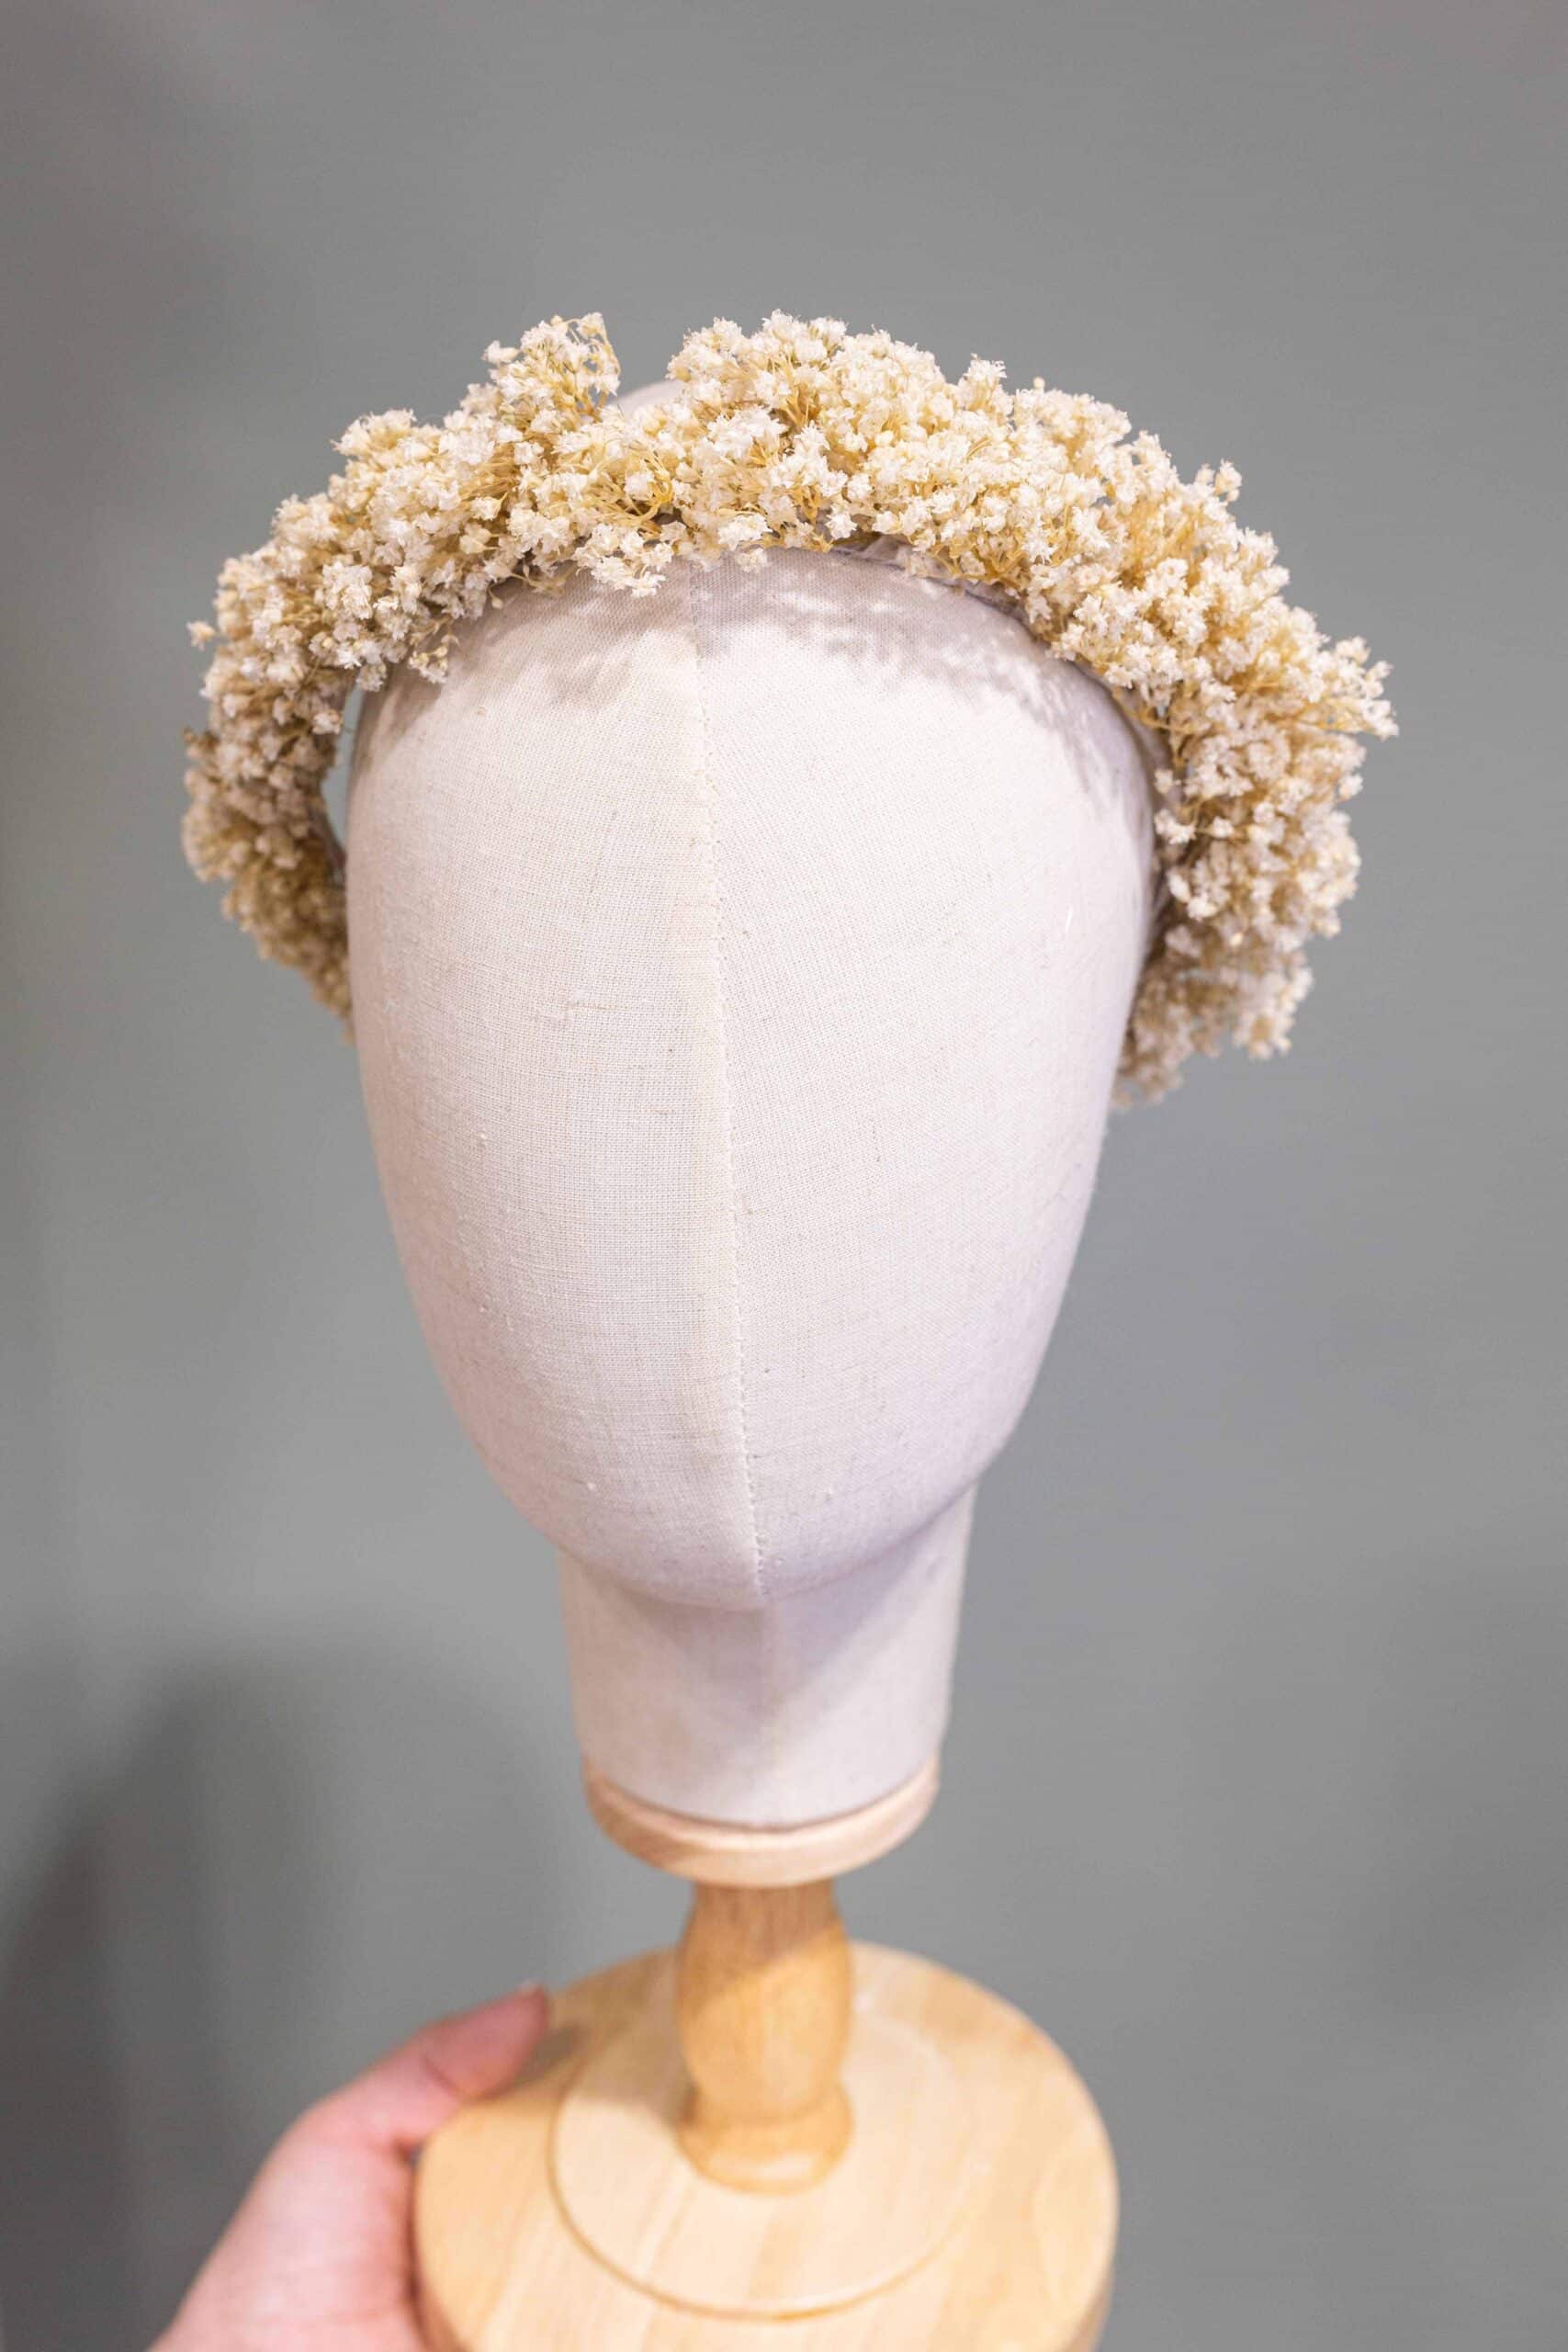 Descubre la elegancia de las diademas con flores preservadas. Encuentra inspiración y consejos para lucir lo natural en tu cabello.